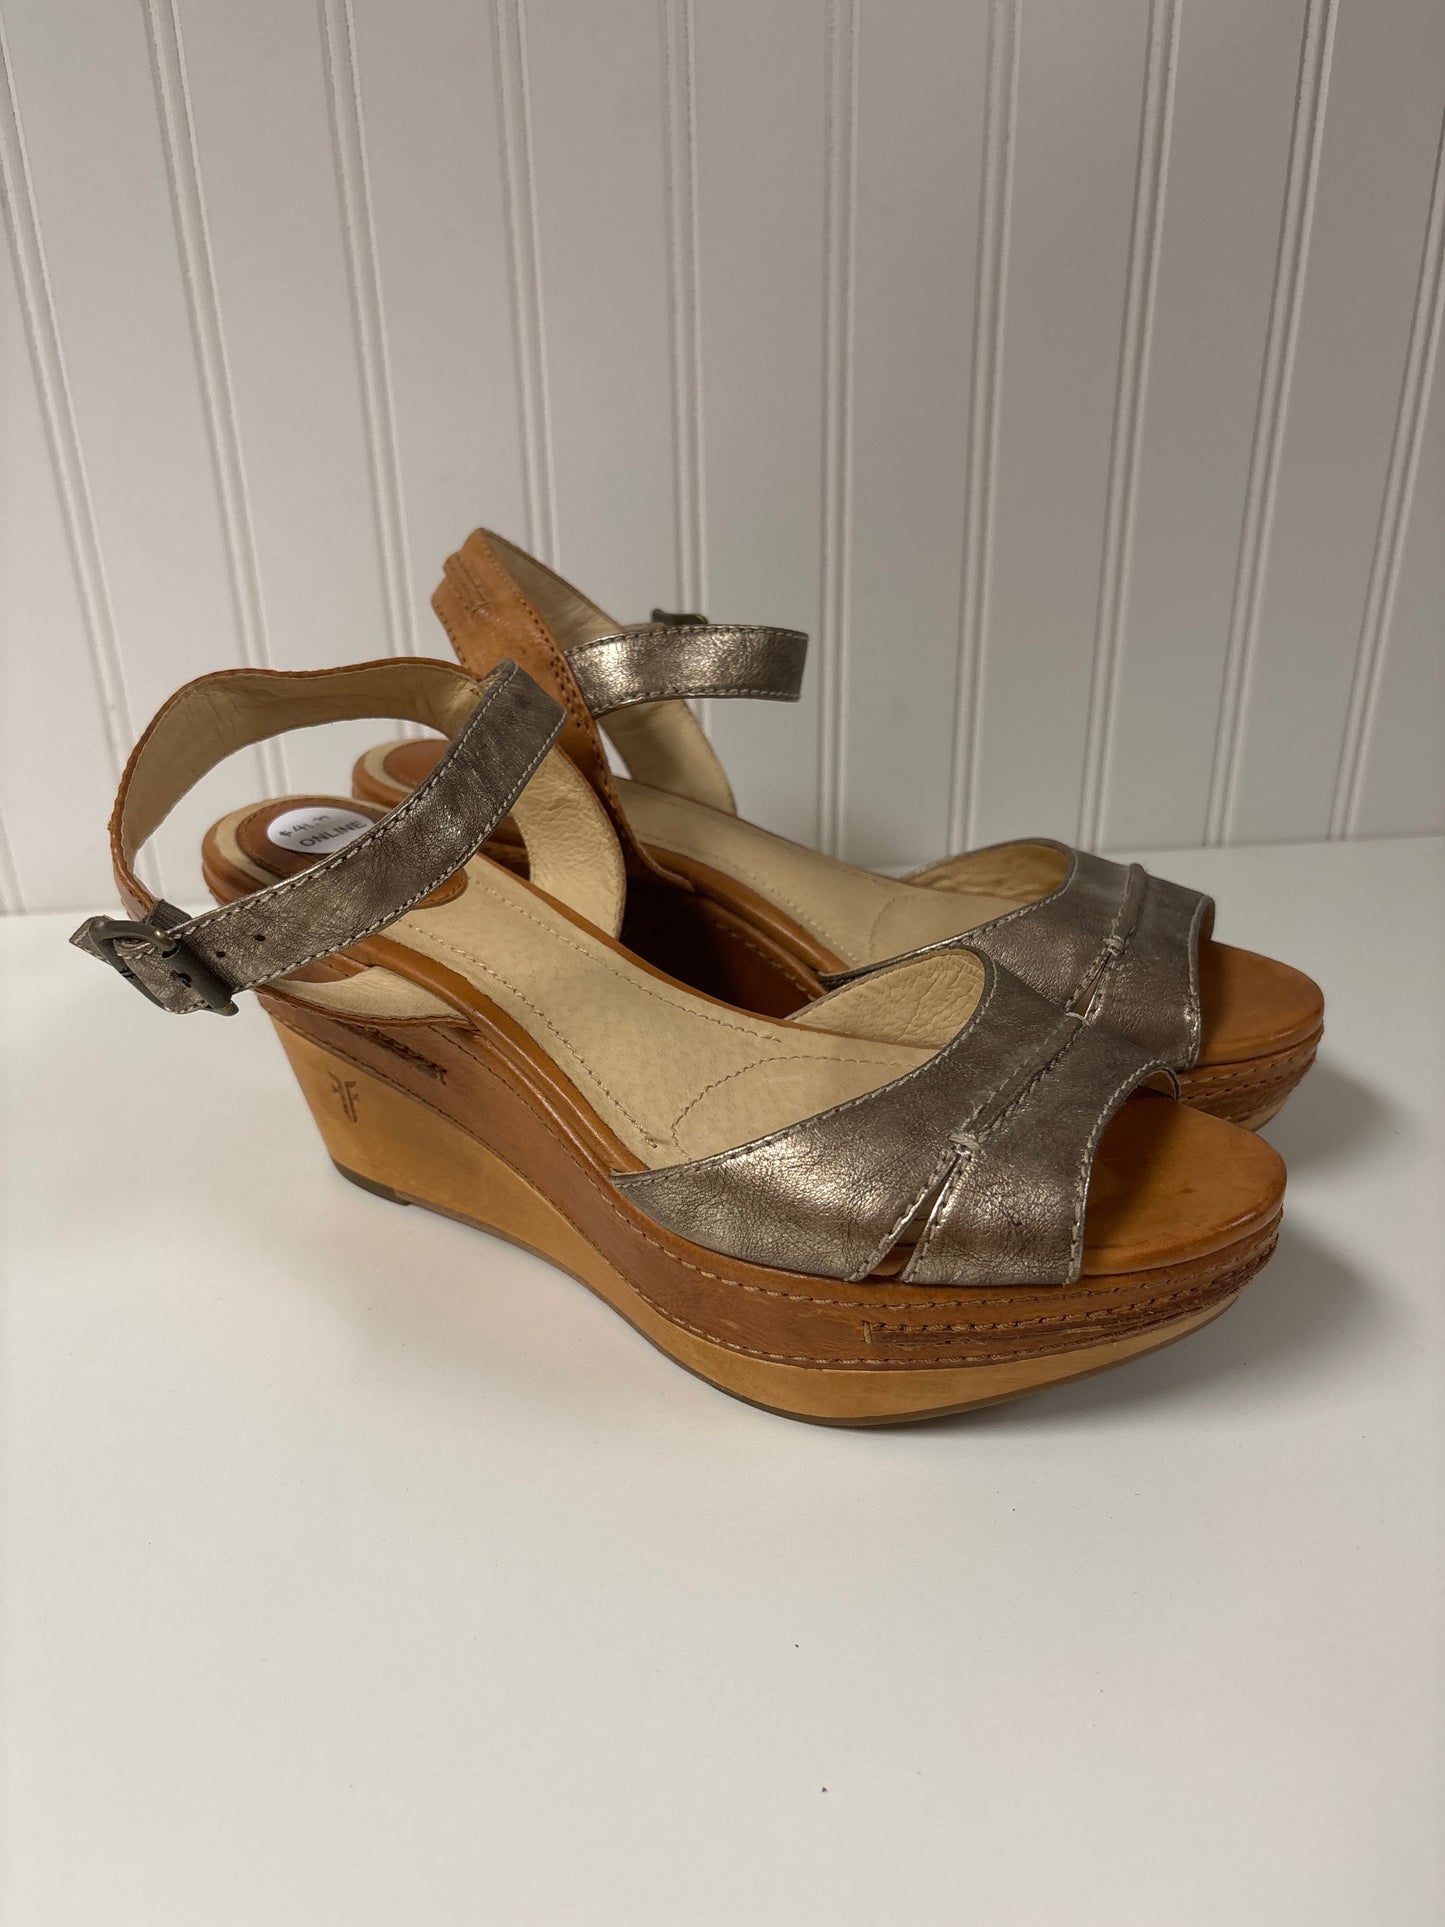 Tan Sandals Designer Frye, Size 8.5